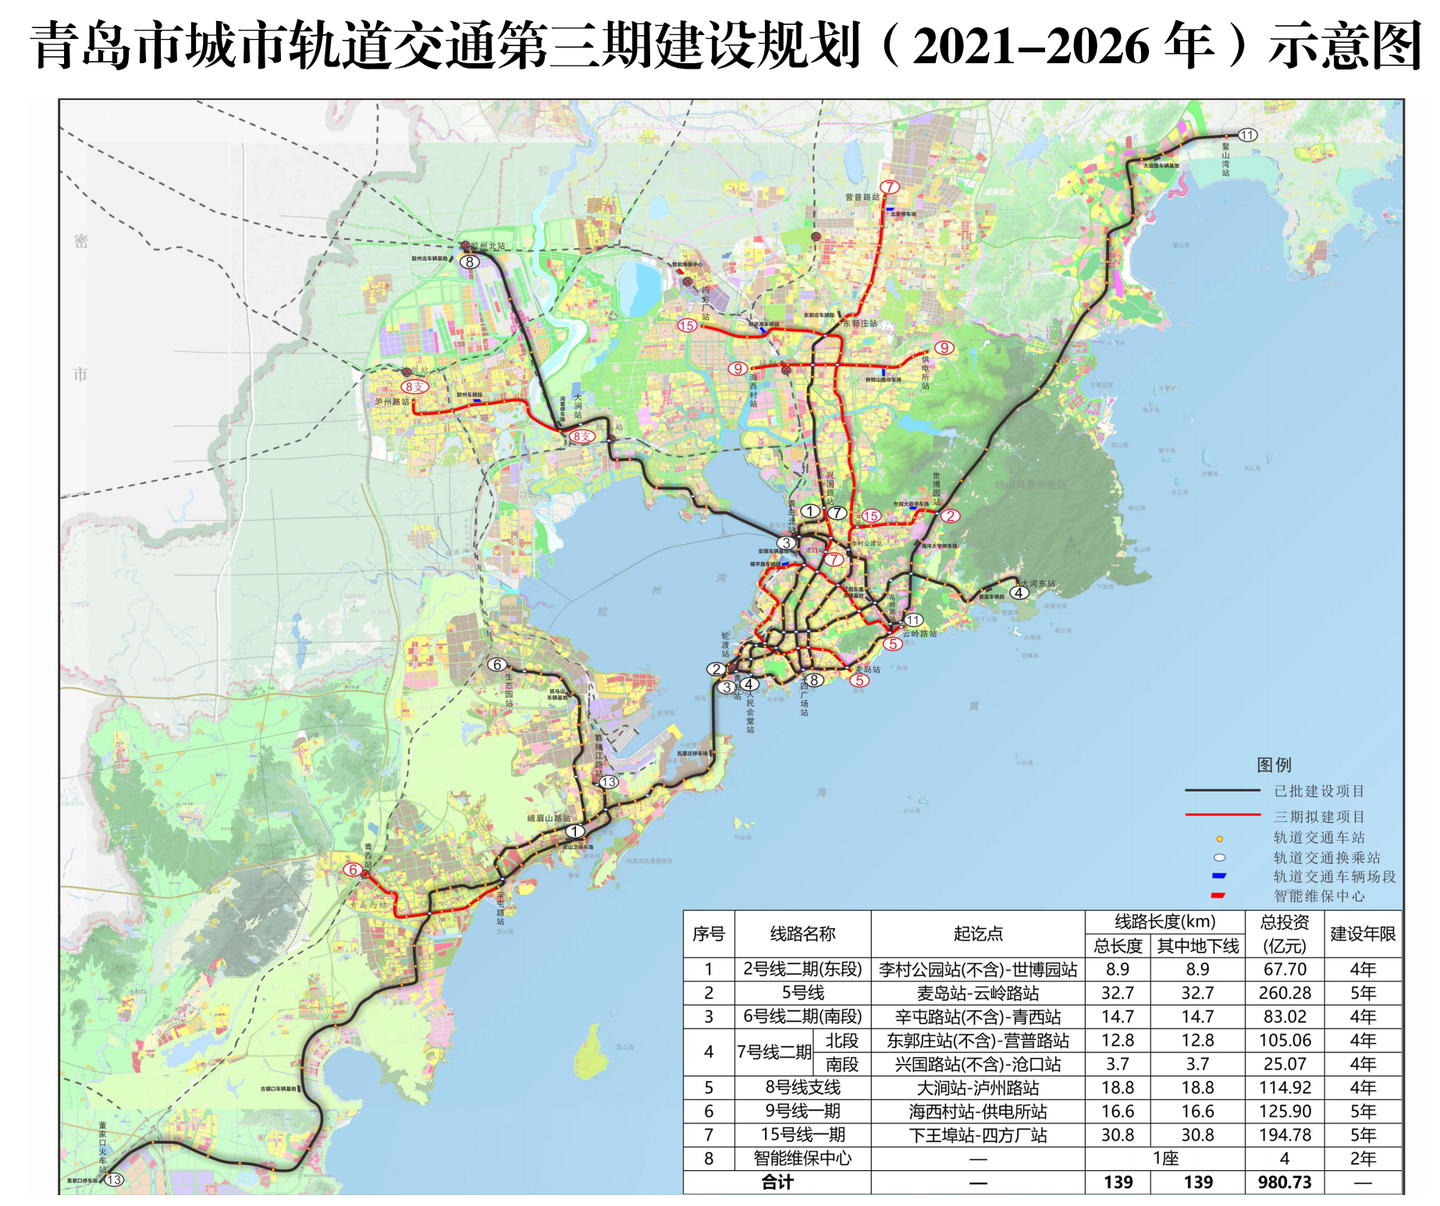 青岛这7条地铁线路规划获批!未来5年建成!